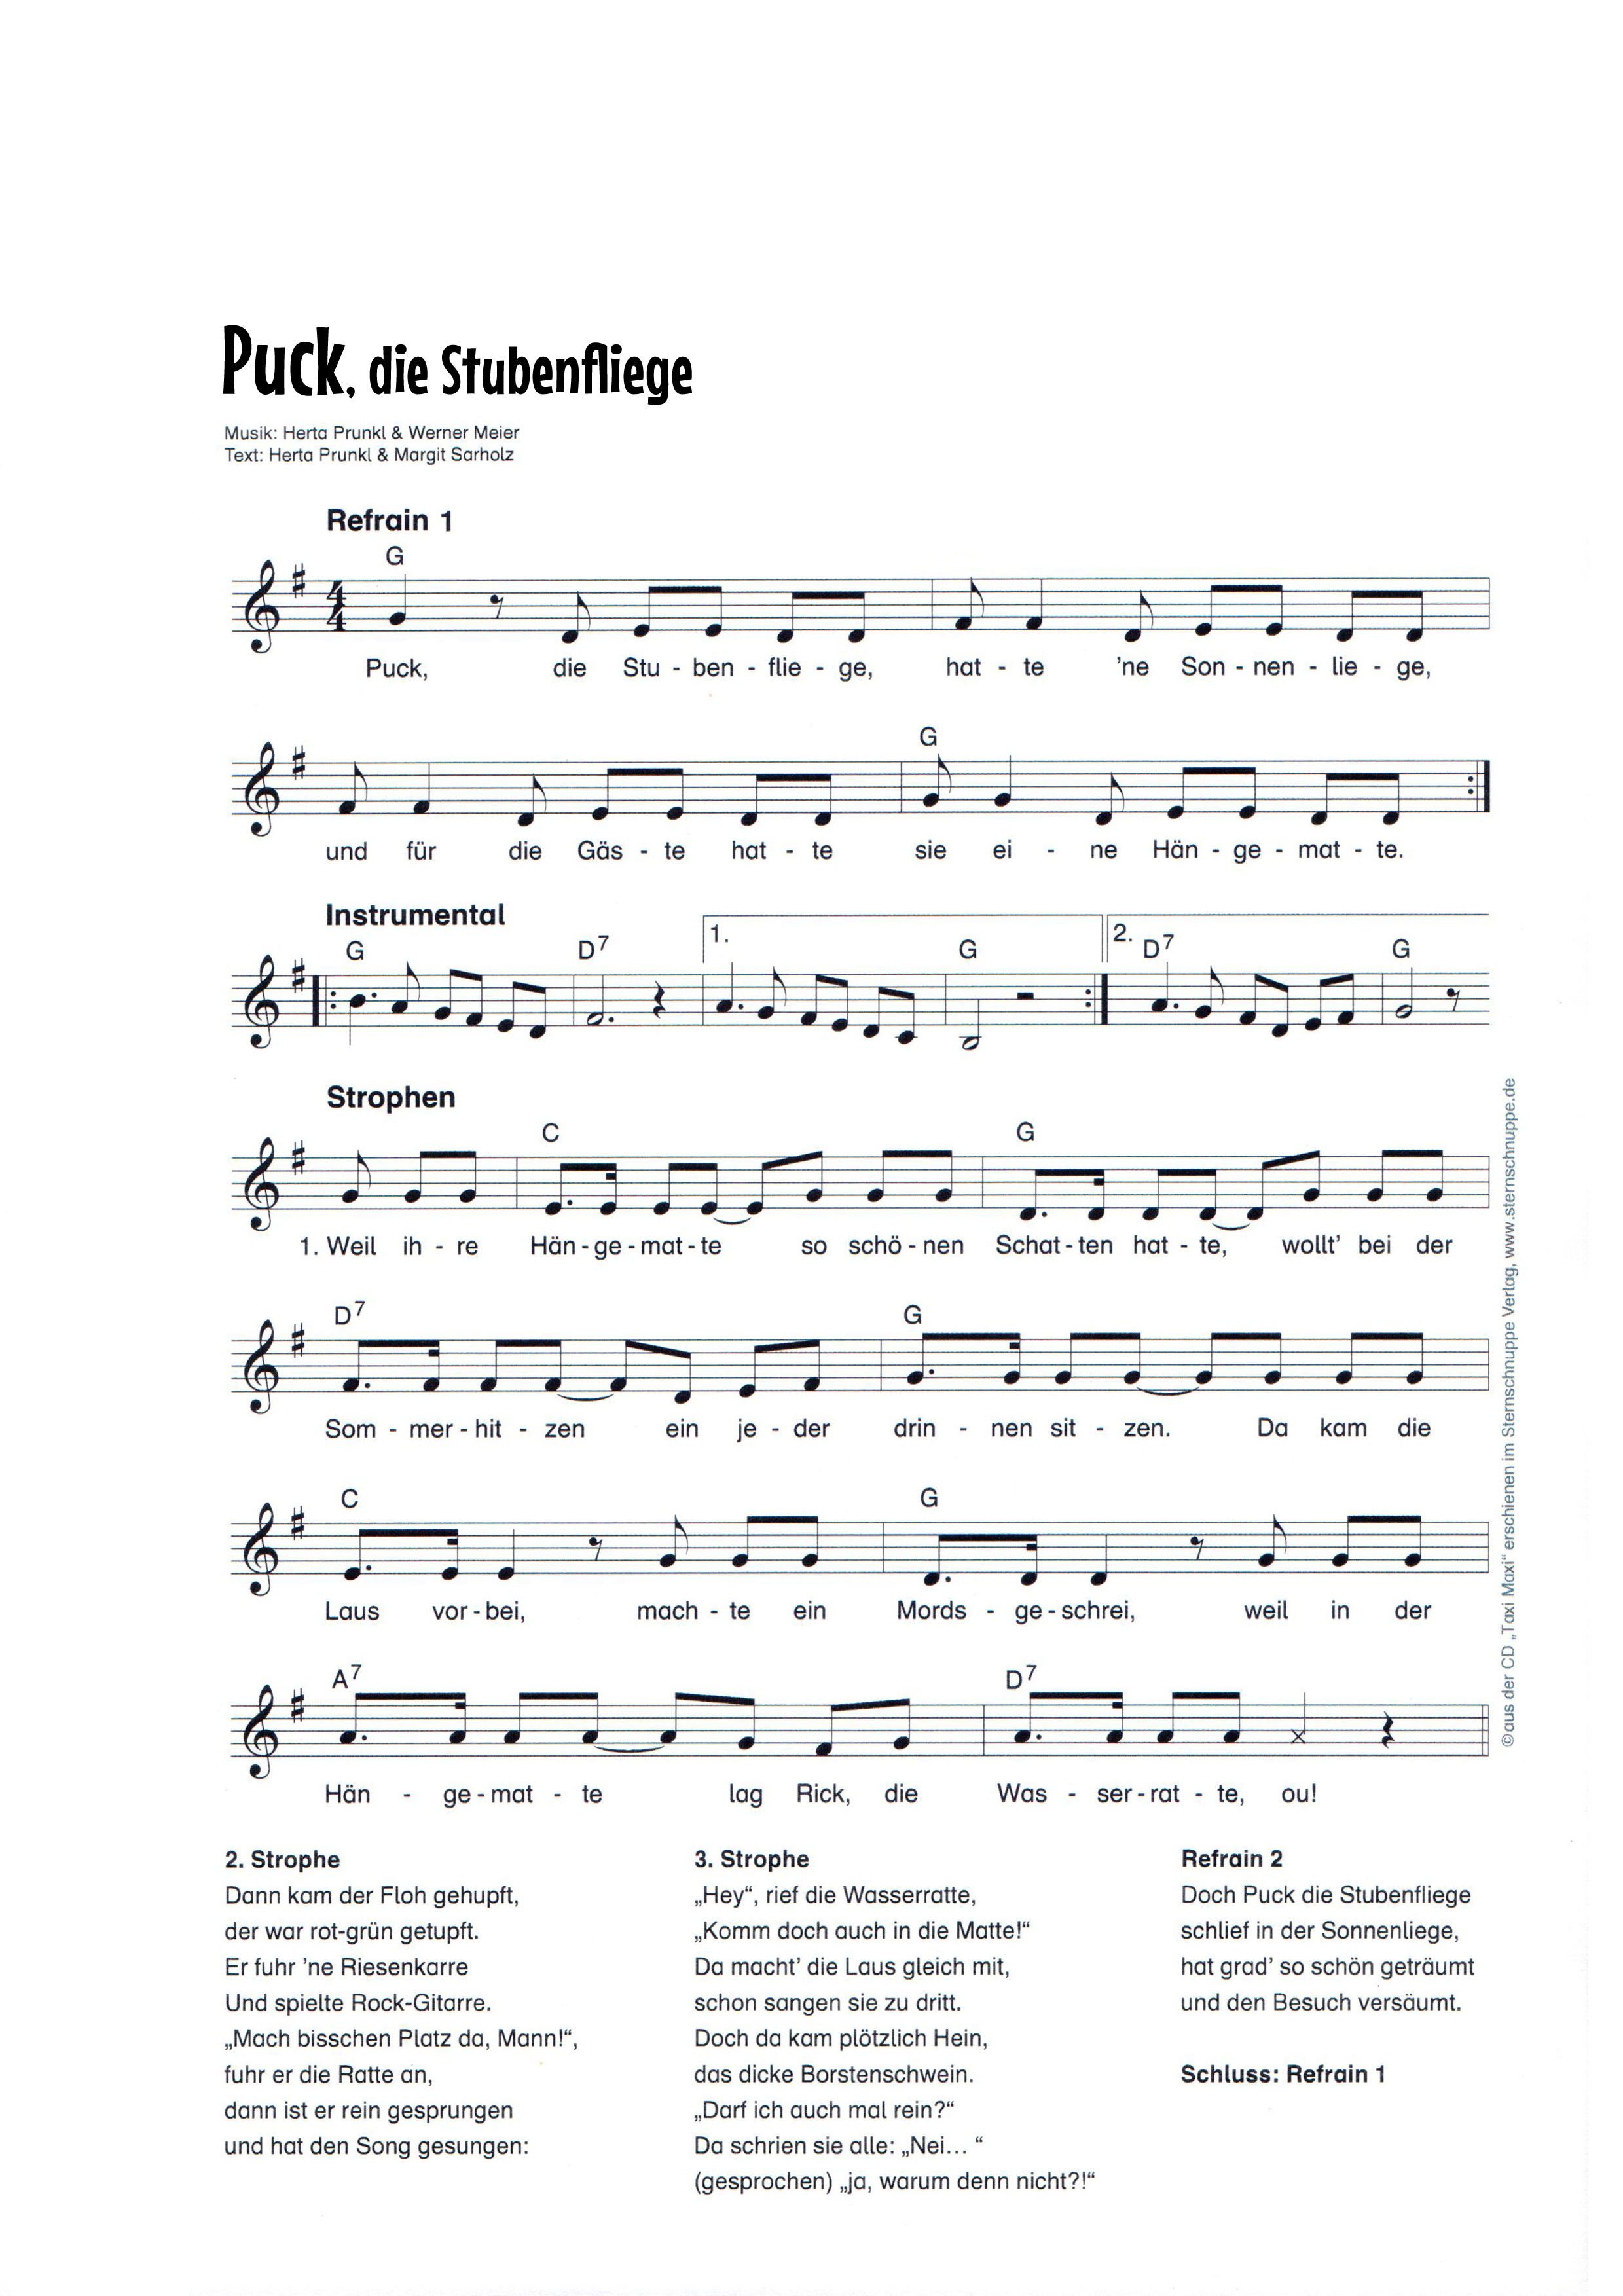 Liedtext, Akkorde und Noten vom Kinderlied Puck, die Stubenfliege